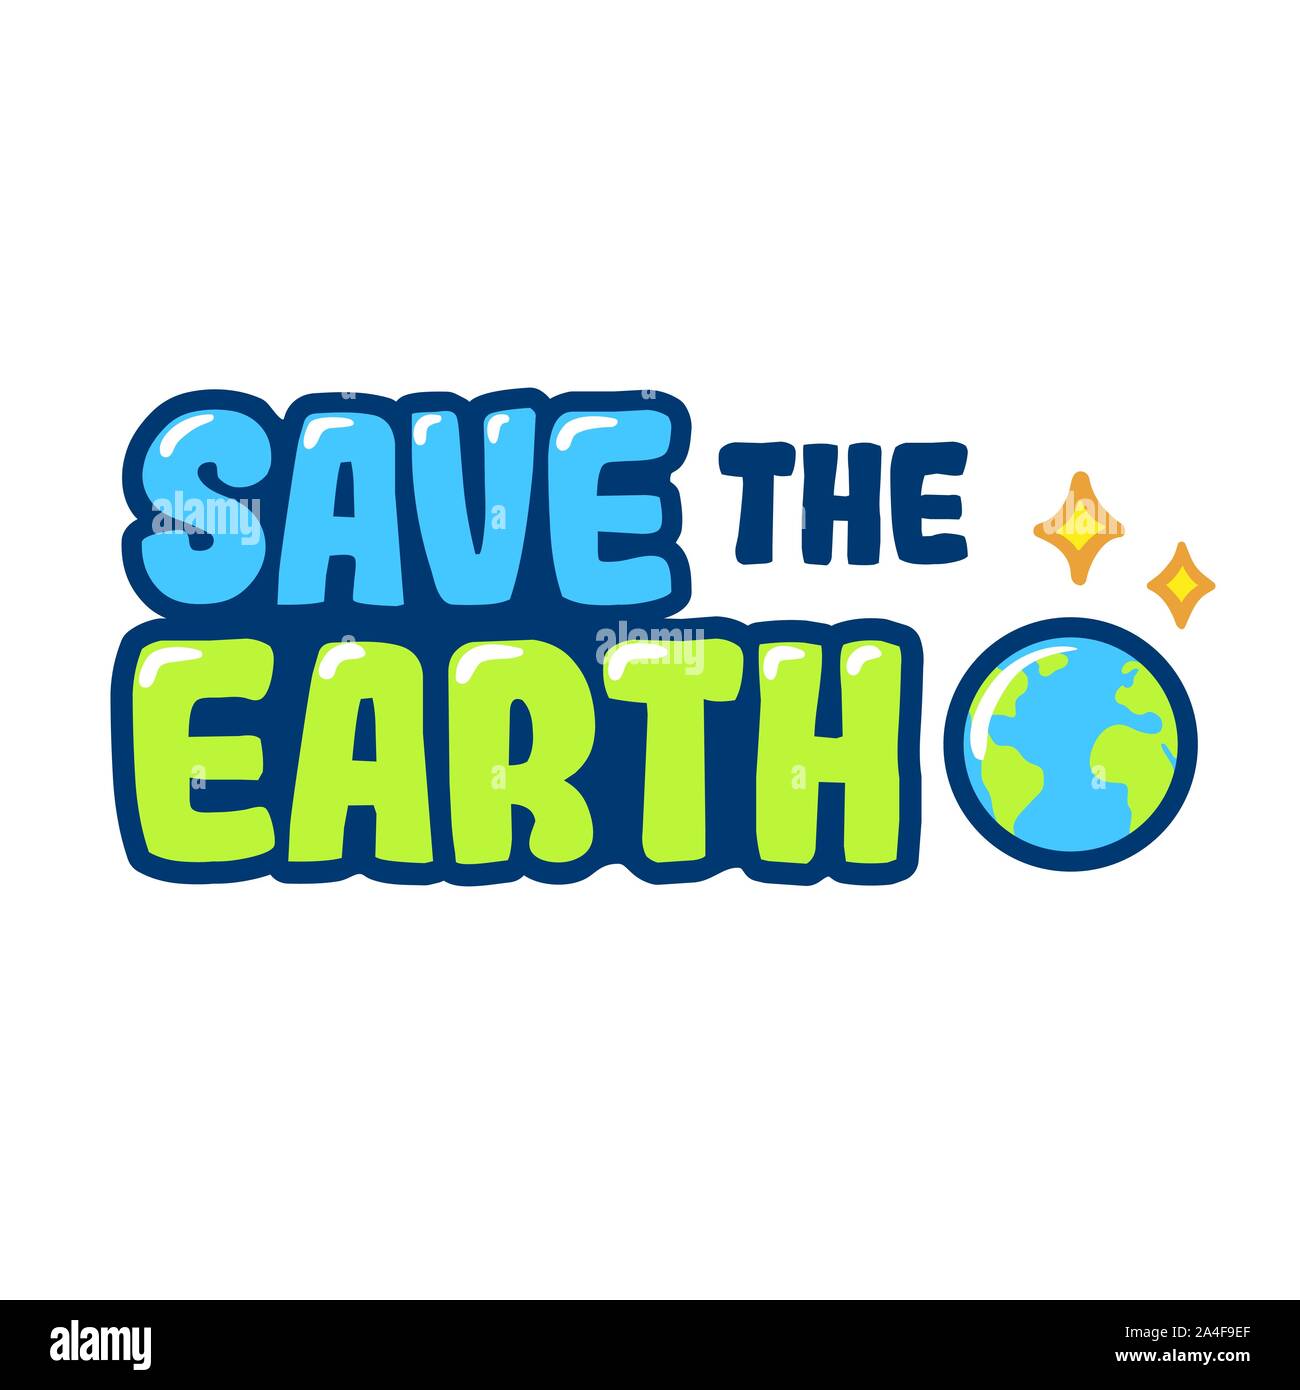 Salvare la terra disegnata a mano cartoon caratteri di testo. La giornata della terra poster, vector clip art illustrazione. Illustrazione Vettoriale